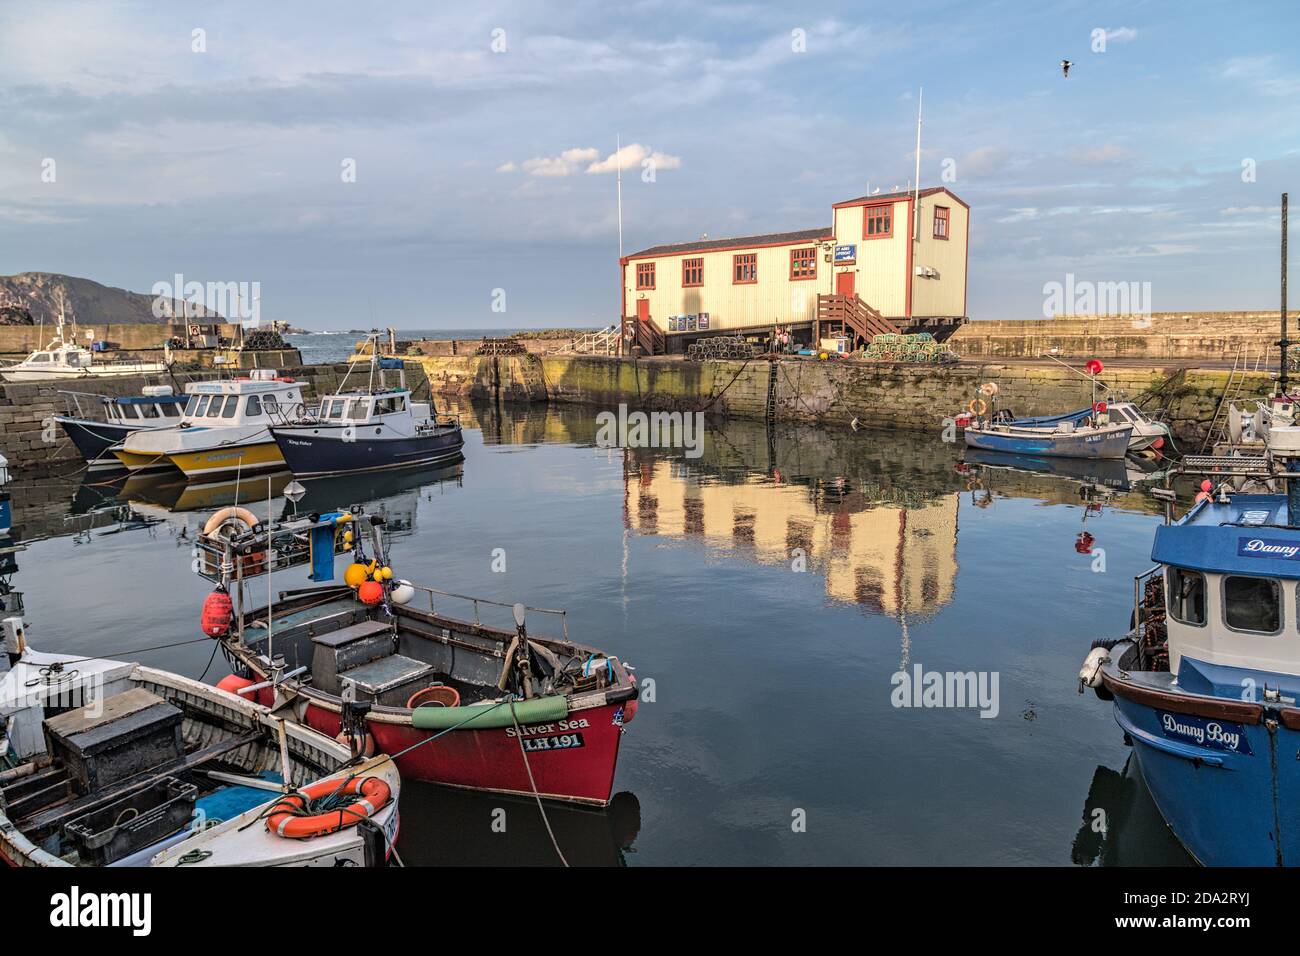 Des bateaux de pêche et une maison de sauvetage dans le port de St Abbs, un petit village de pêcheurs près de Coldingham dans le Berwickshire, en Écosse Banque D'Images